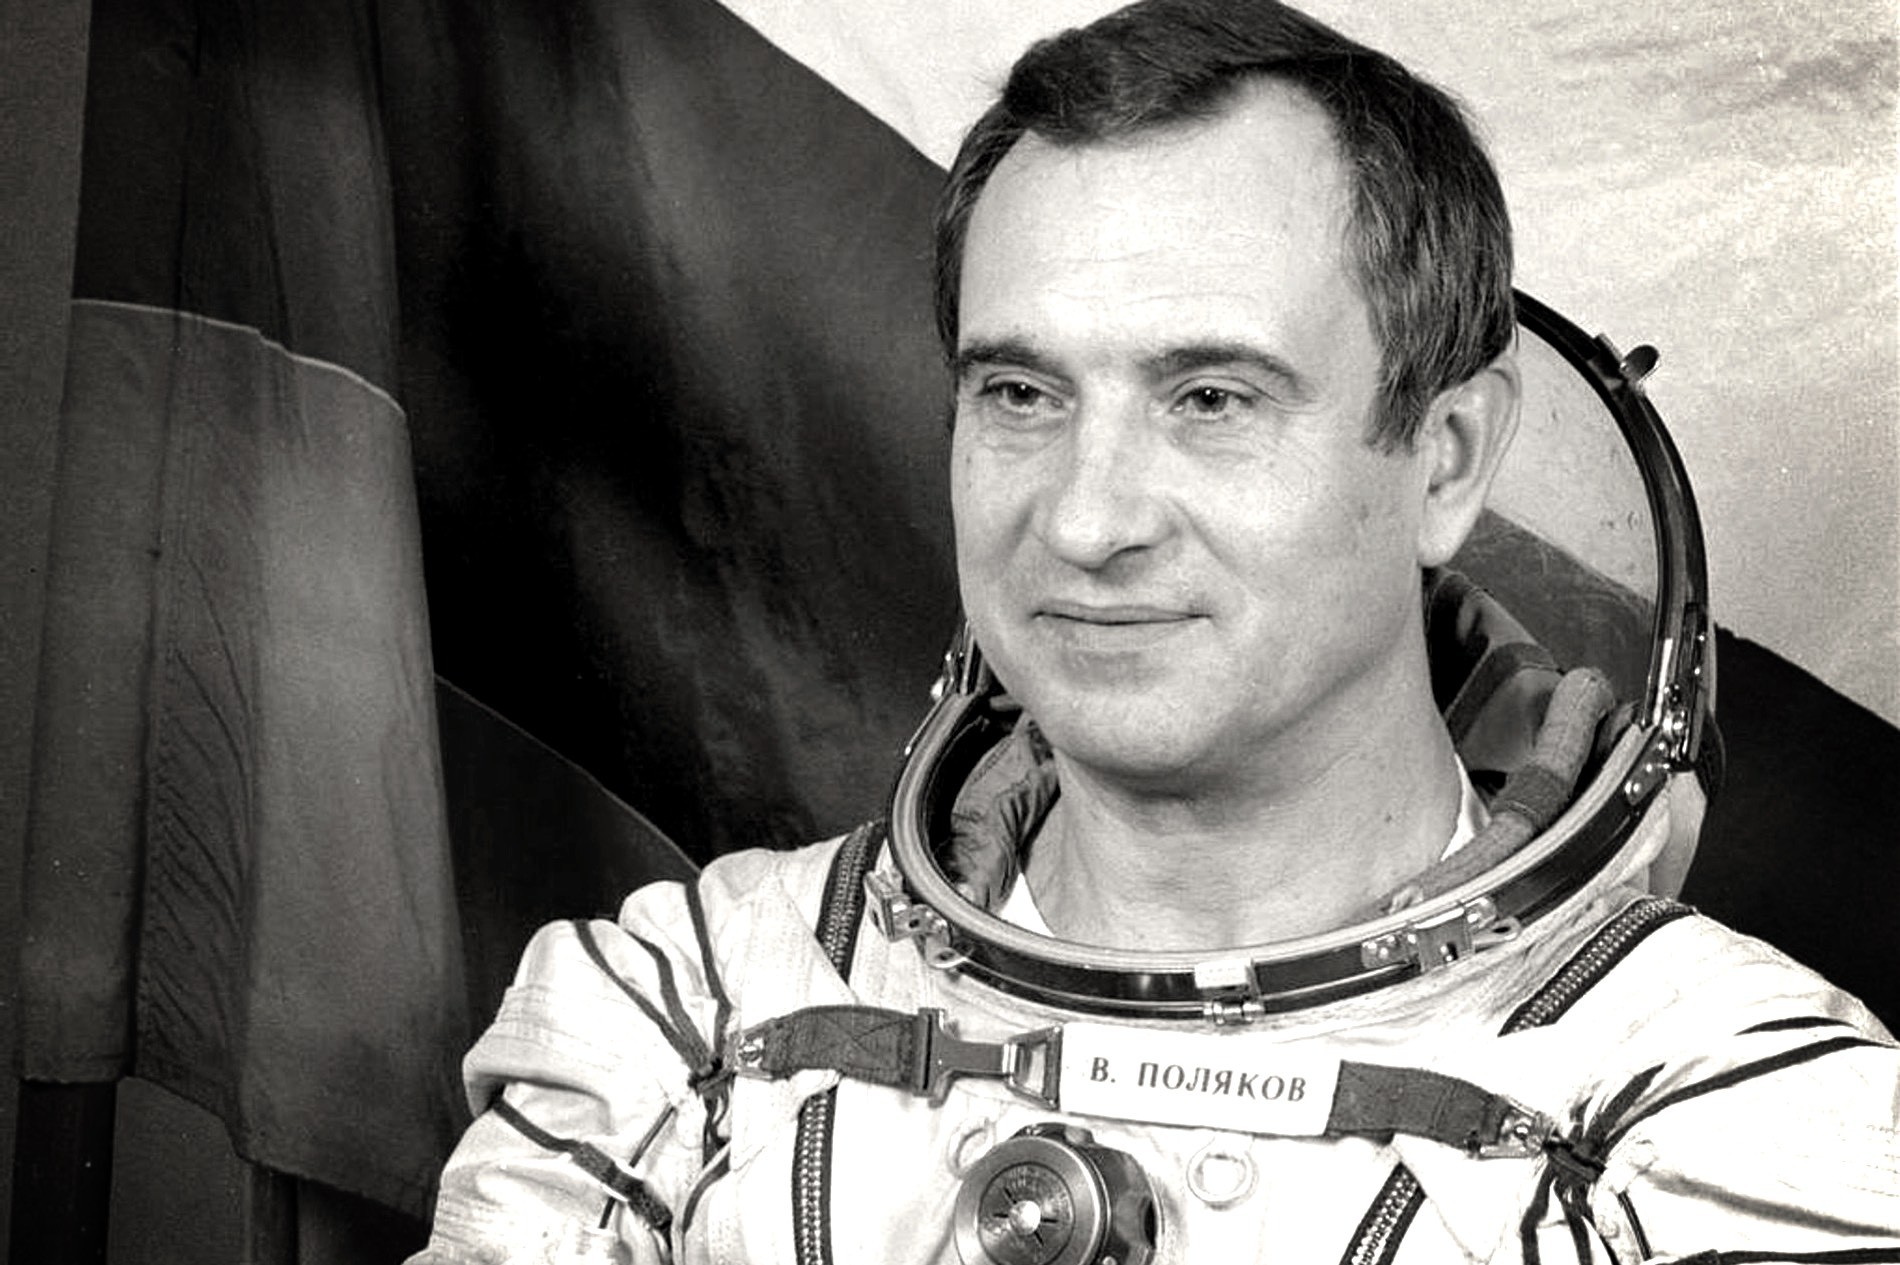 Космонавт совершивший самый длинный полет